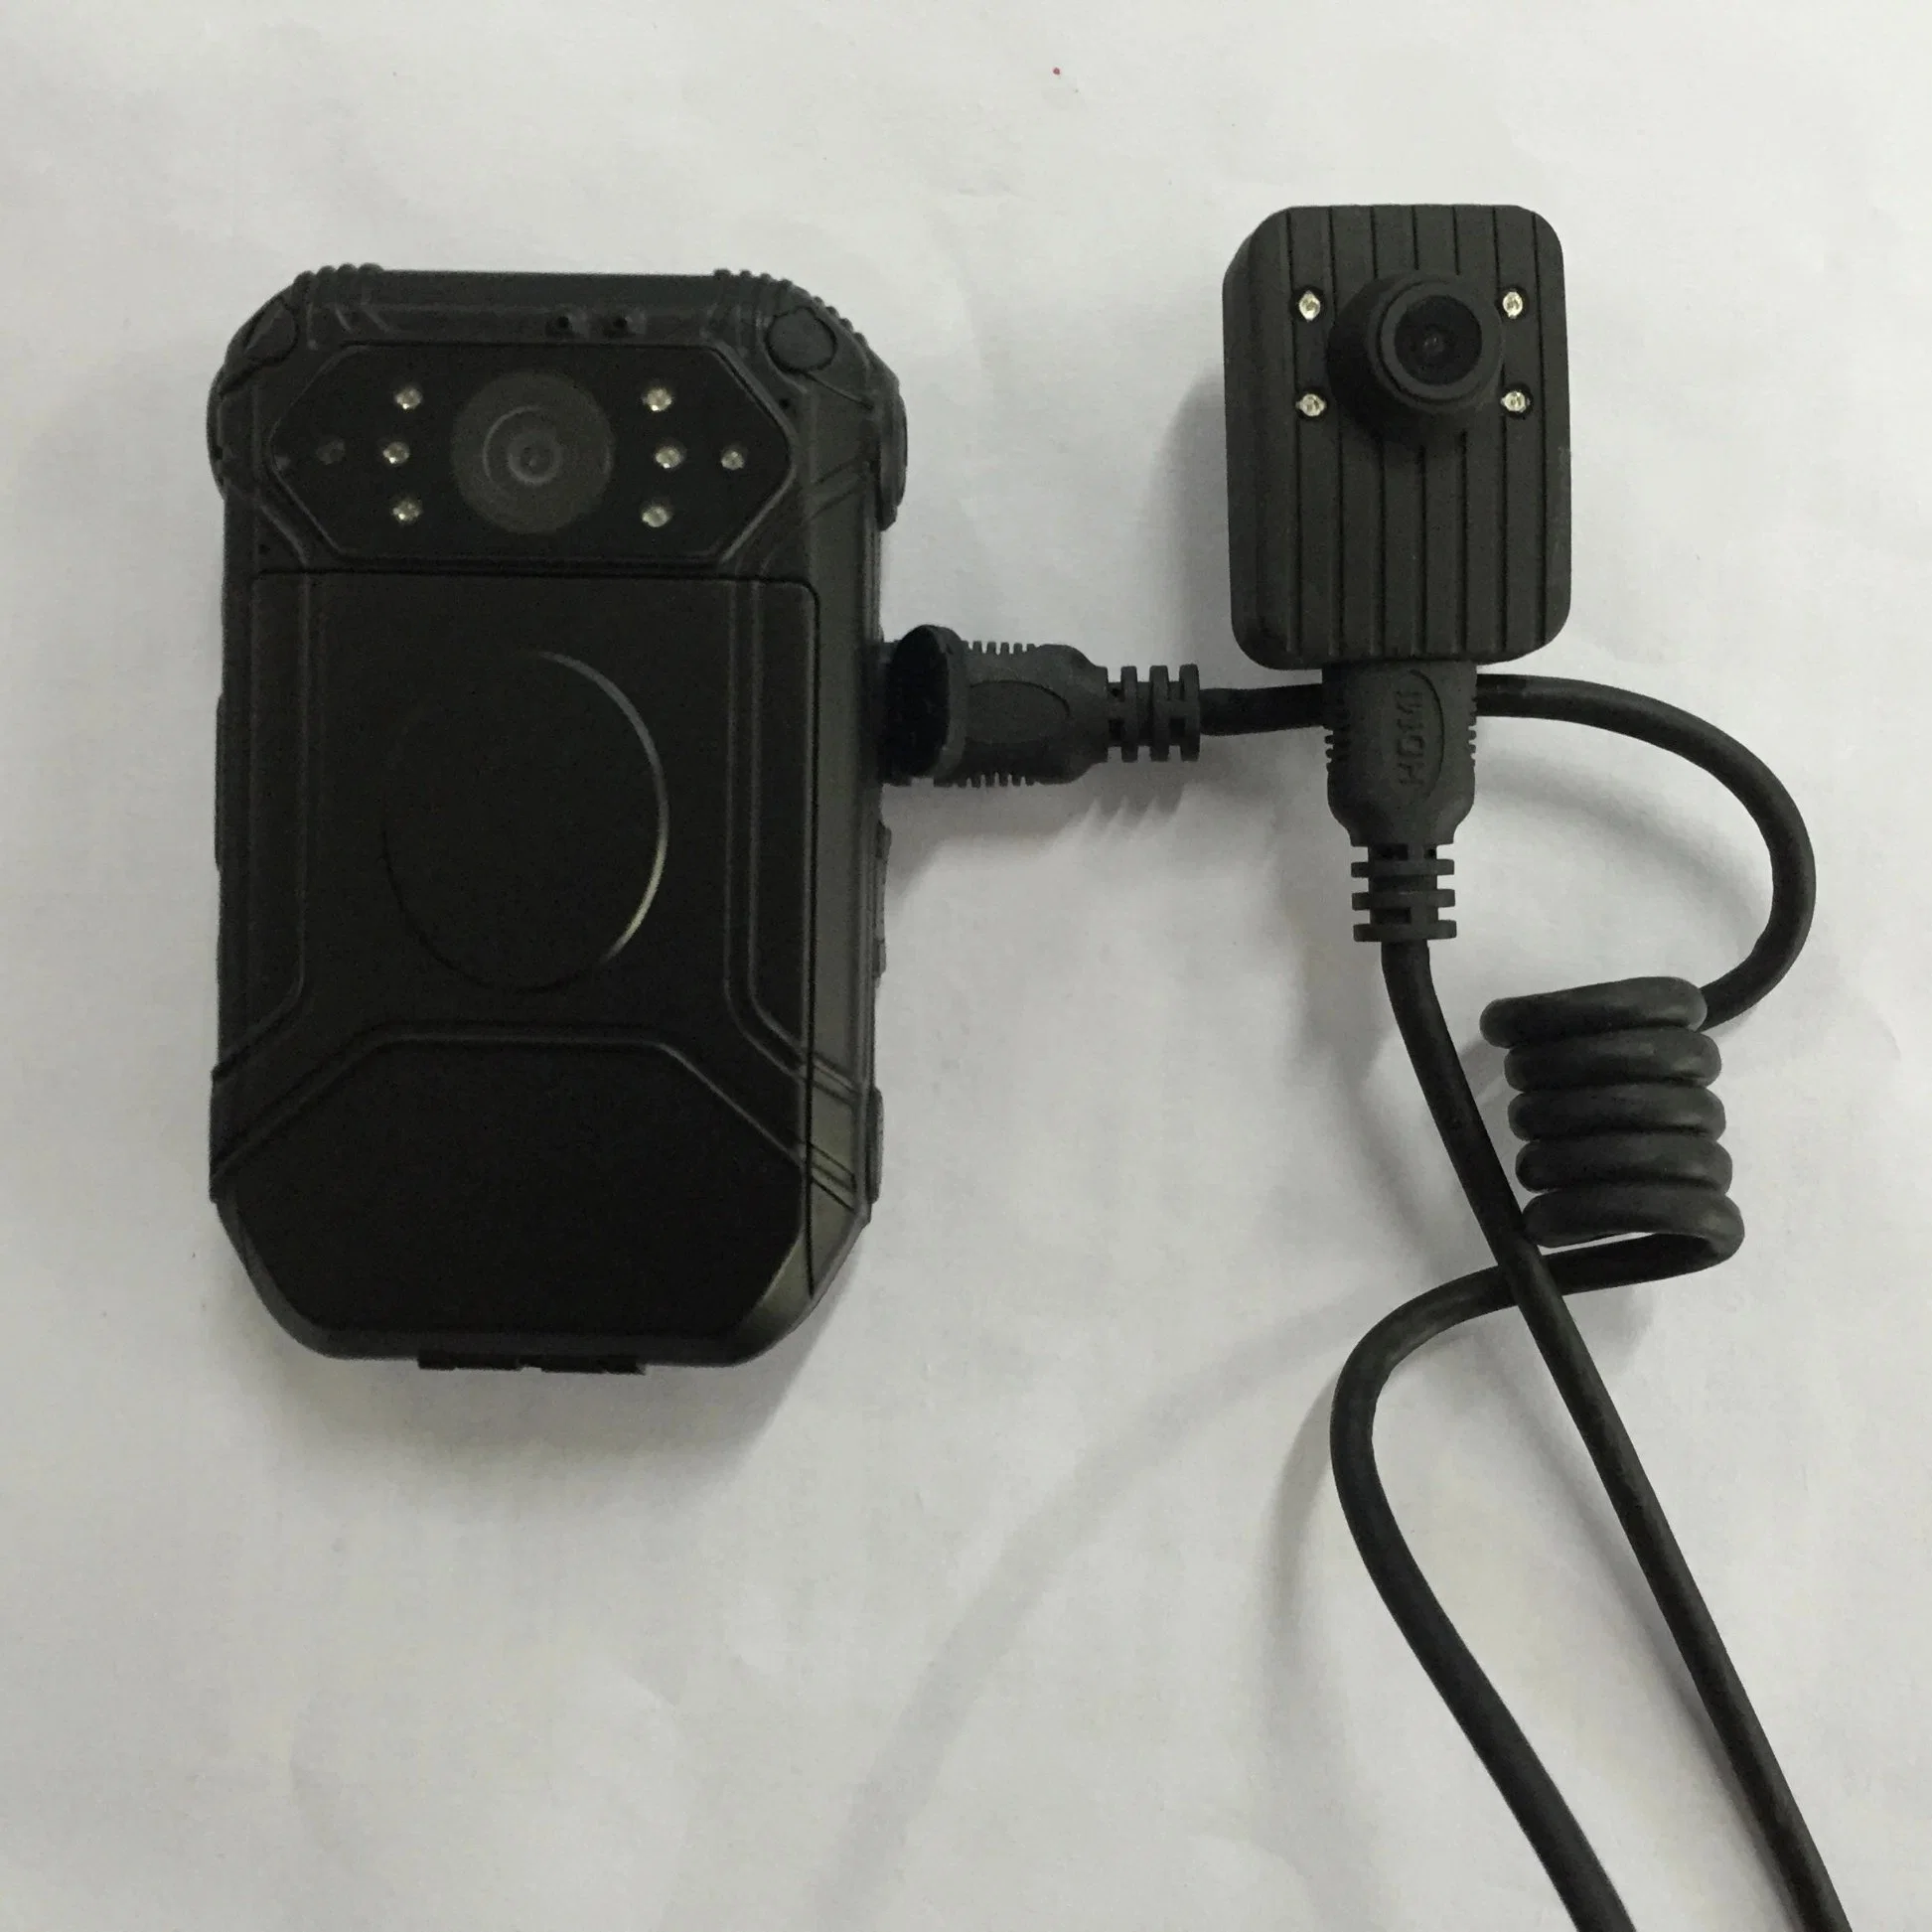 Tragbare Kamera für die CCTV-Überwachung am Körper